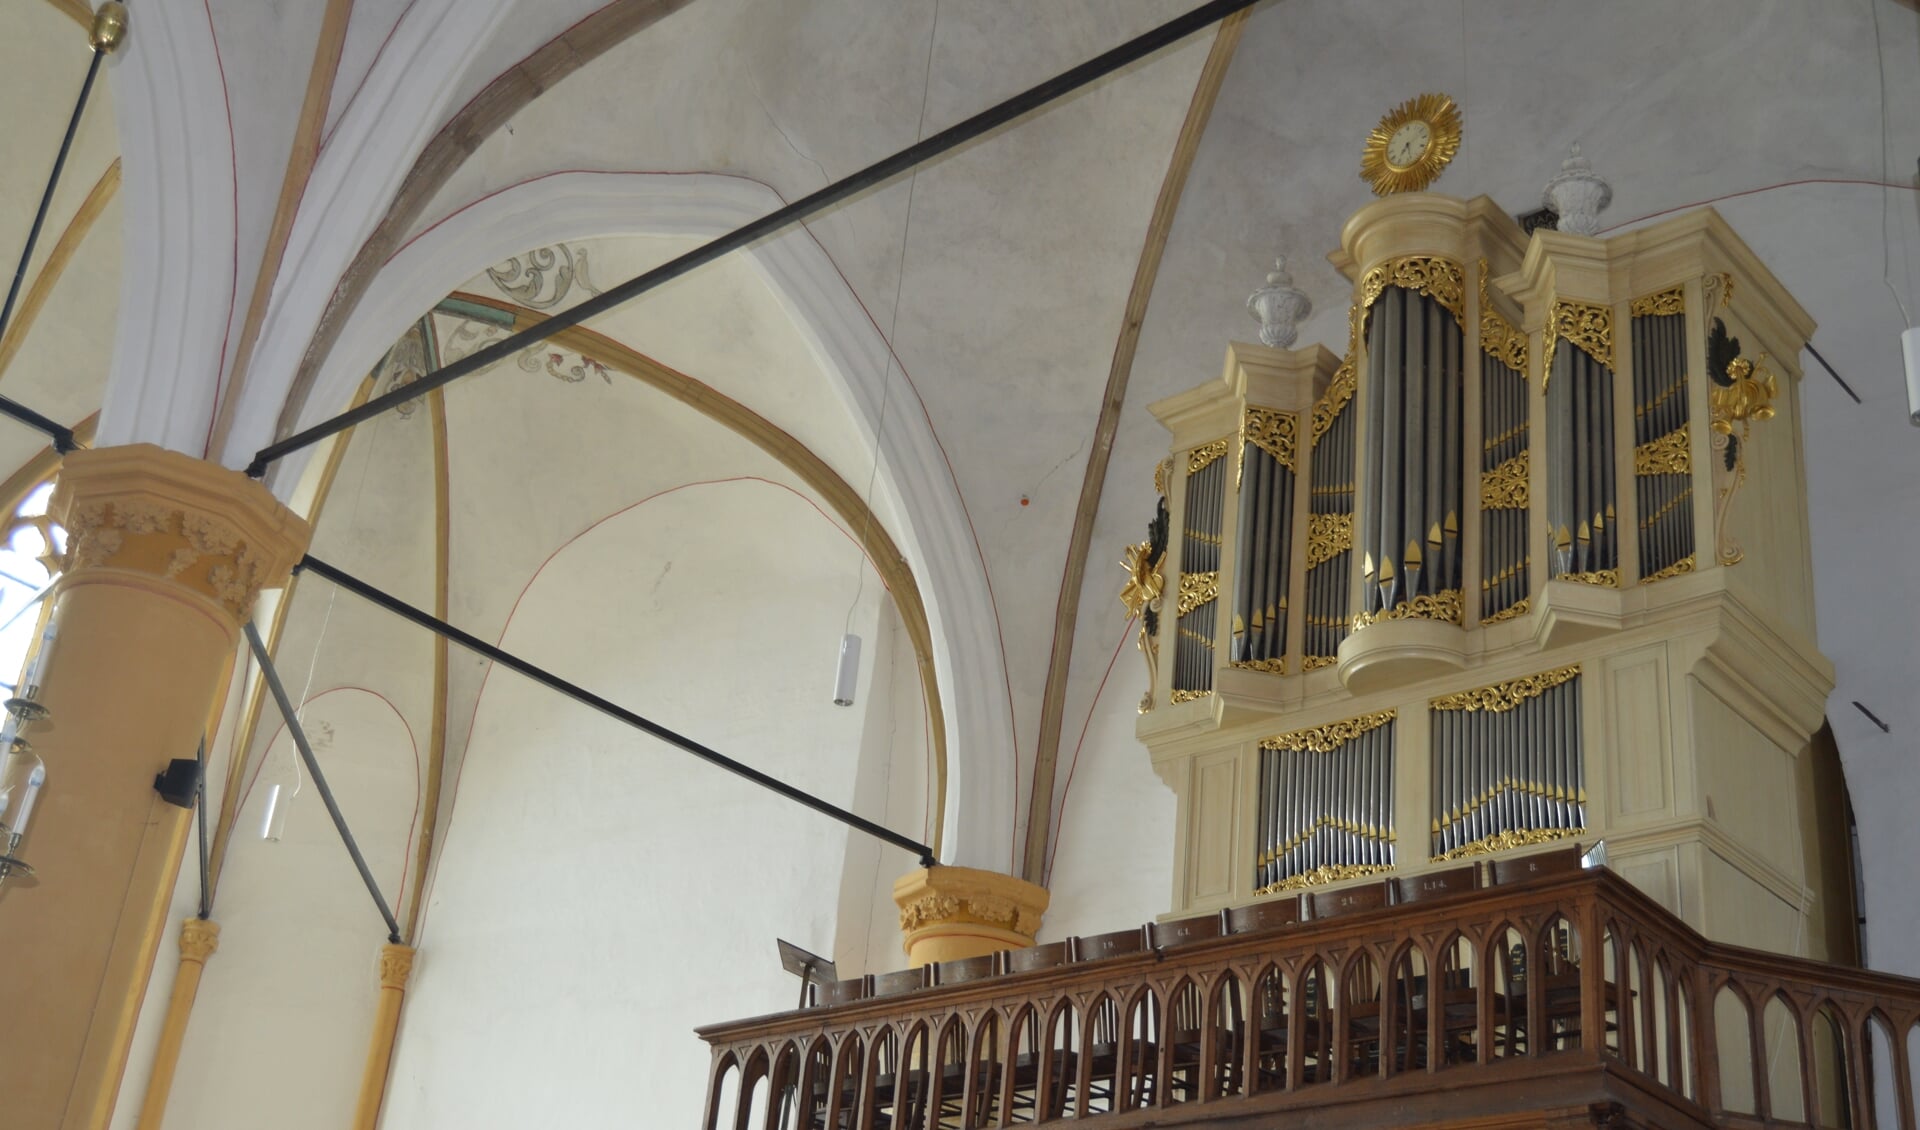 Het orgel in de Buitenkerk van Kampen waar op 5 mei om 15.00 een samenzangmiddag gehouden wordt.